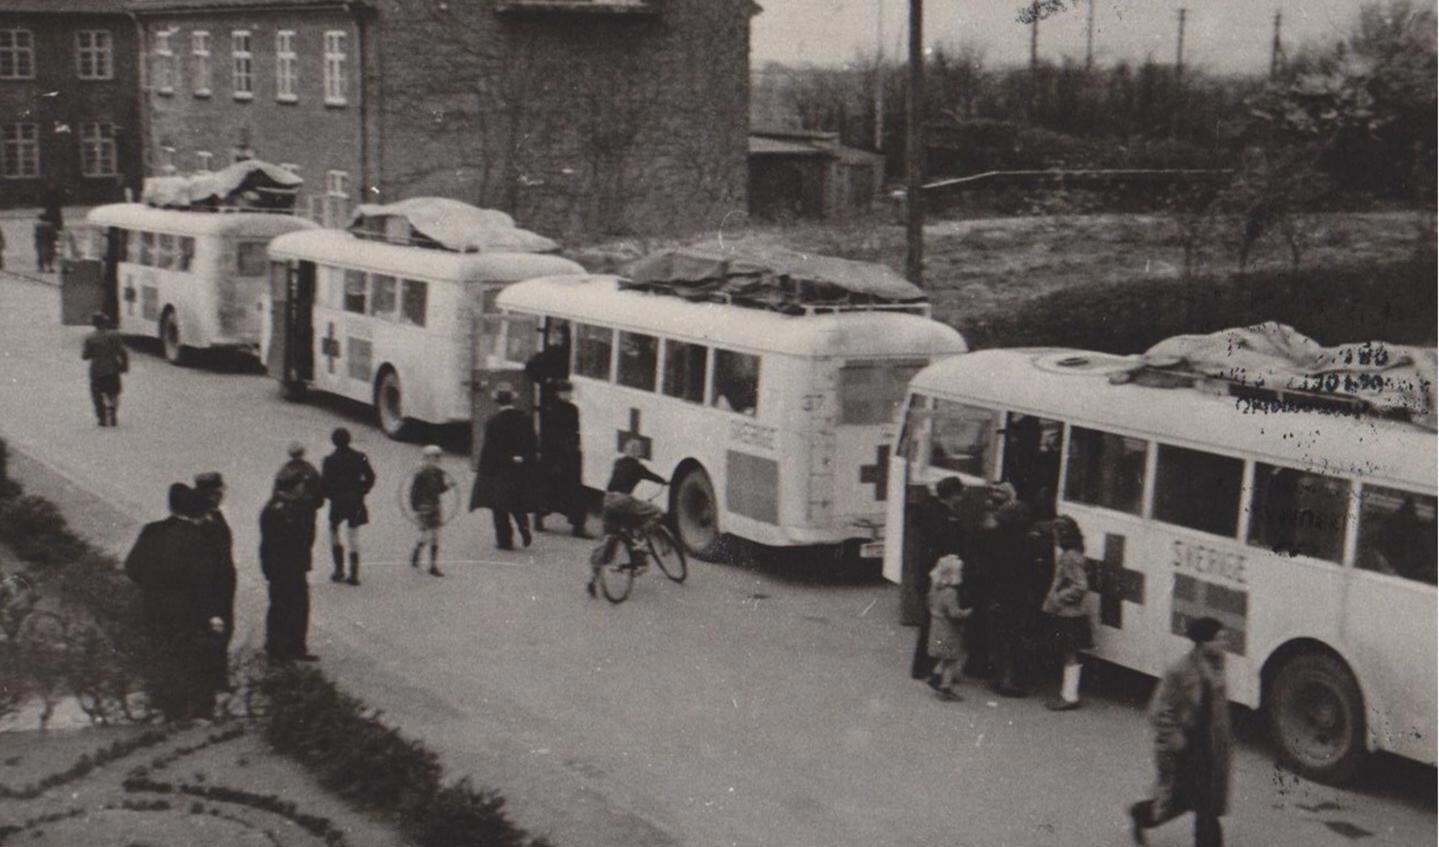 De hvide busser satte deres præg på gadelivet i Padborg kort før og efter befrielsen i 1945. 153 jøder hørte til de mirakuløst reddede. 